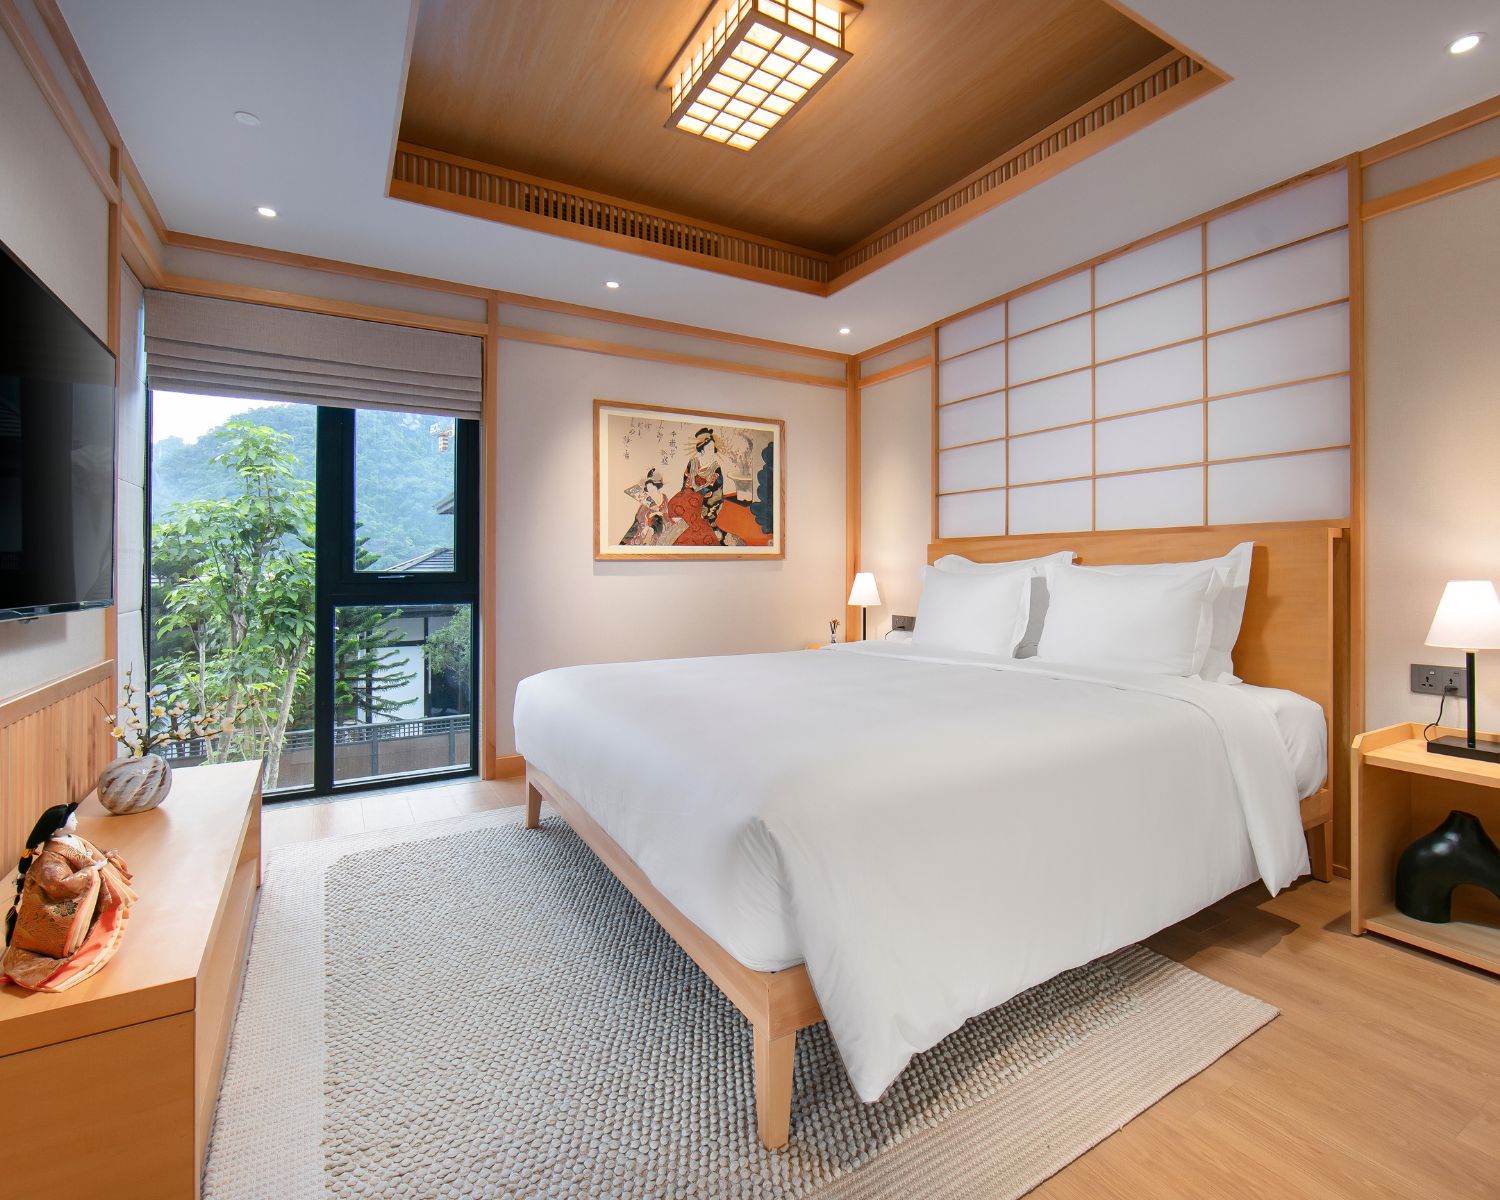 Trải nghiệm khu nghỉ dưỡng Yama Villas Onsen - "Biệt thự khoáng nóng Nhật Bản" 2023